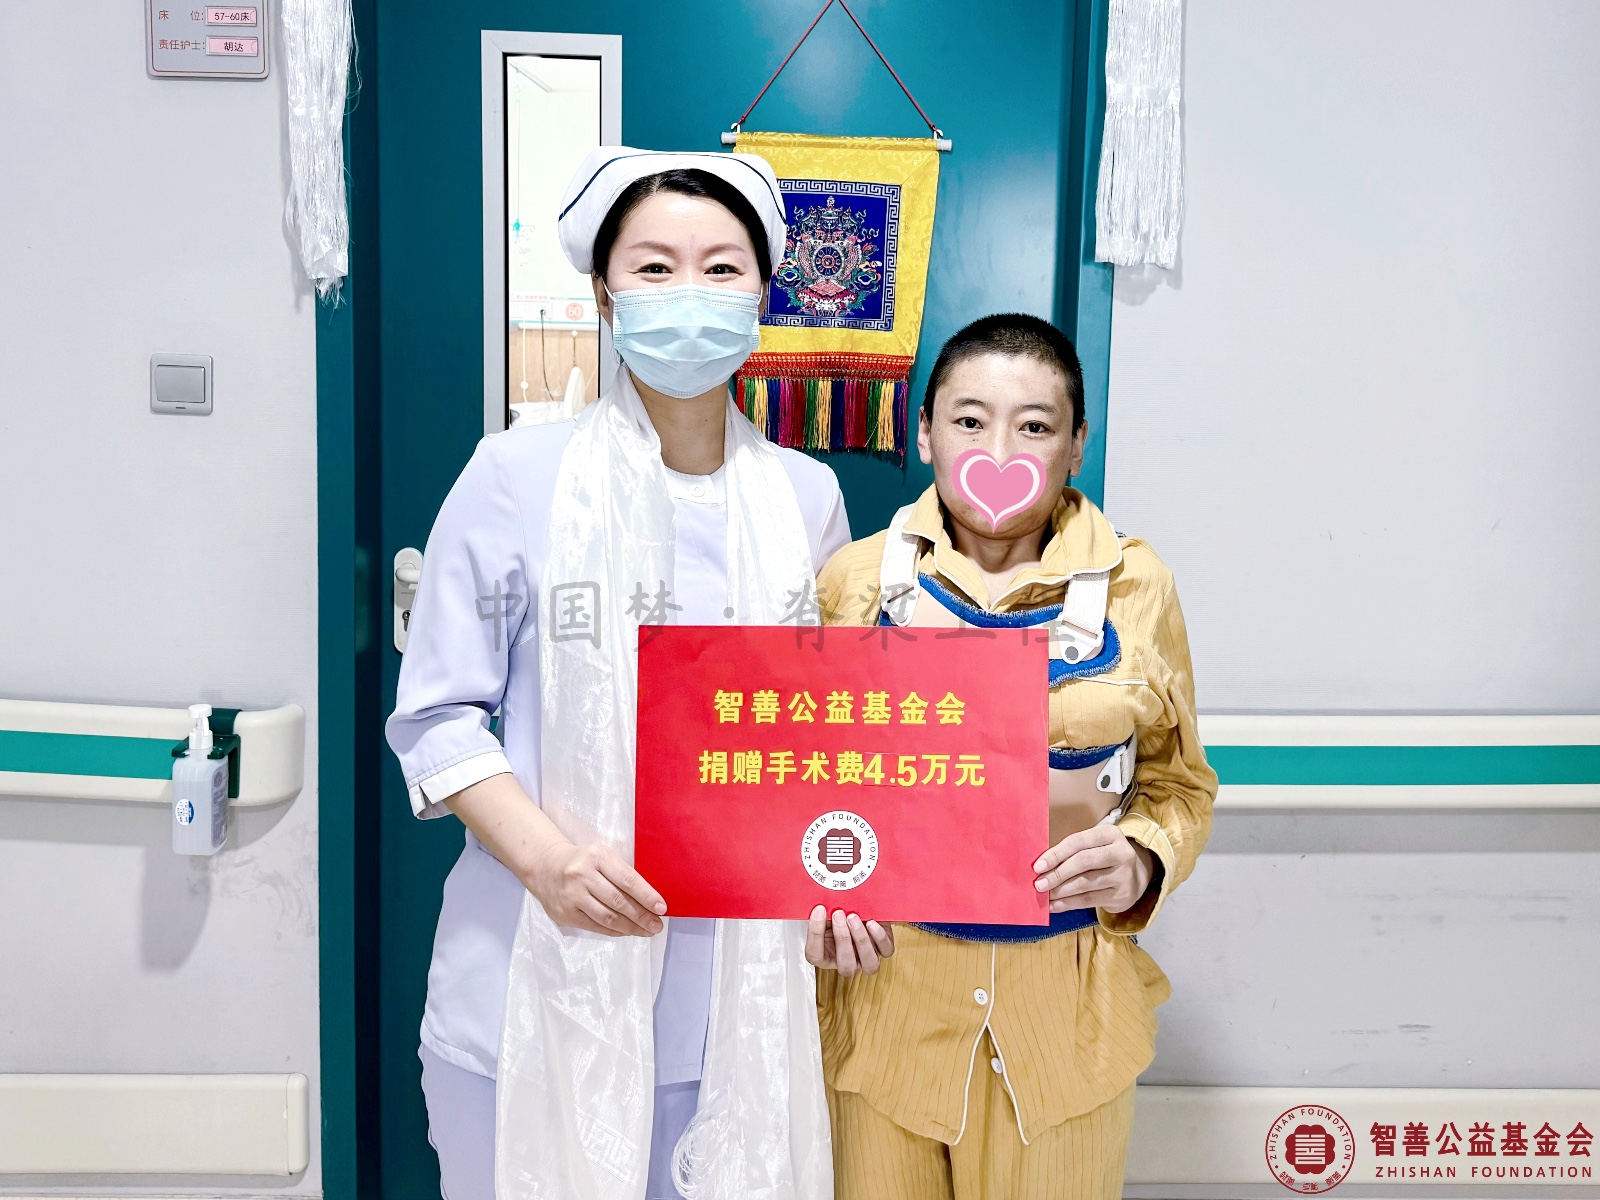 9 北京优联医院龚学华护士长将智善公益基金会捐赠的4.5万元转交给西藏那曲比如县患者小措.jpg